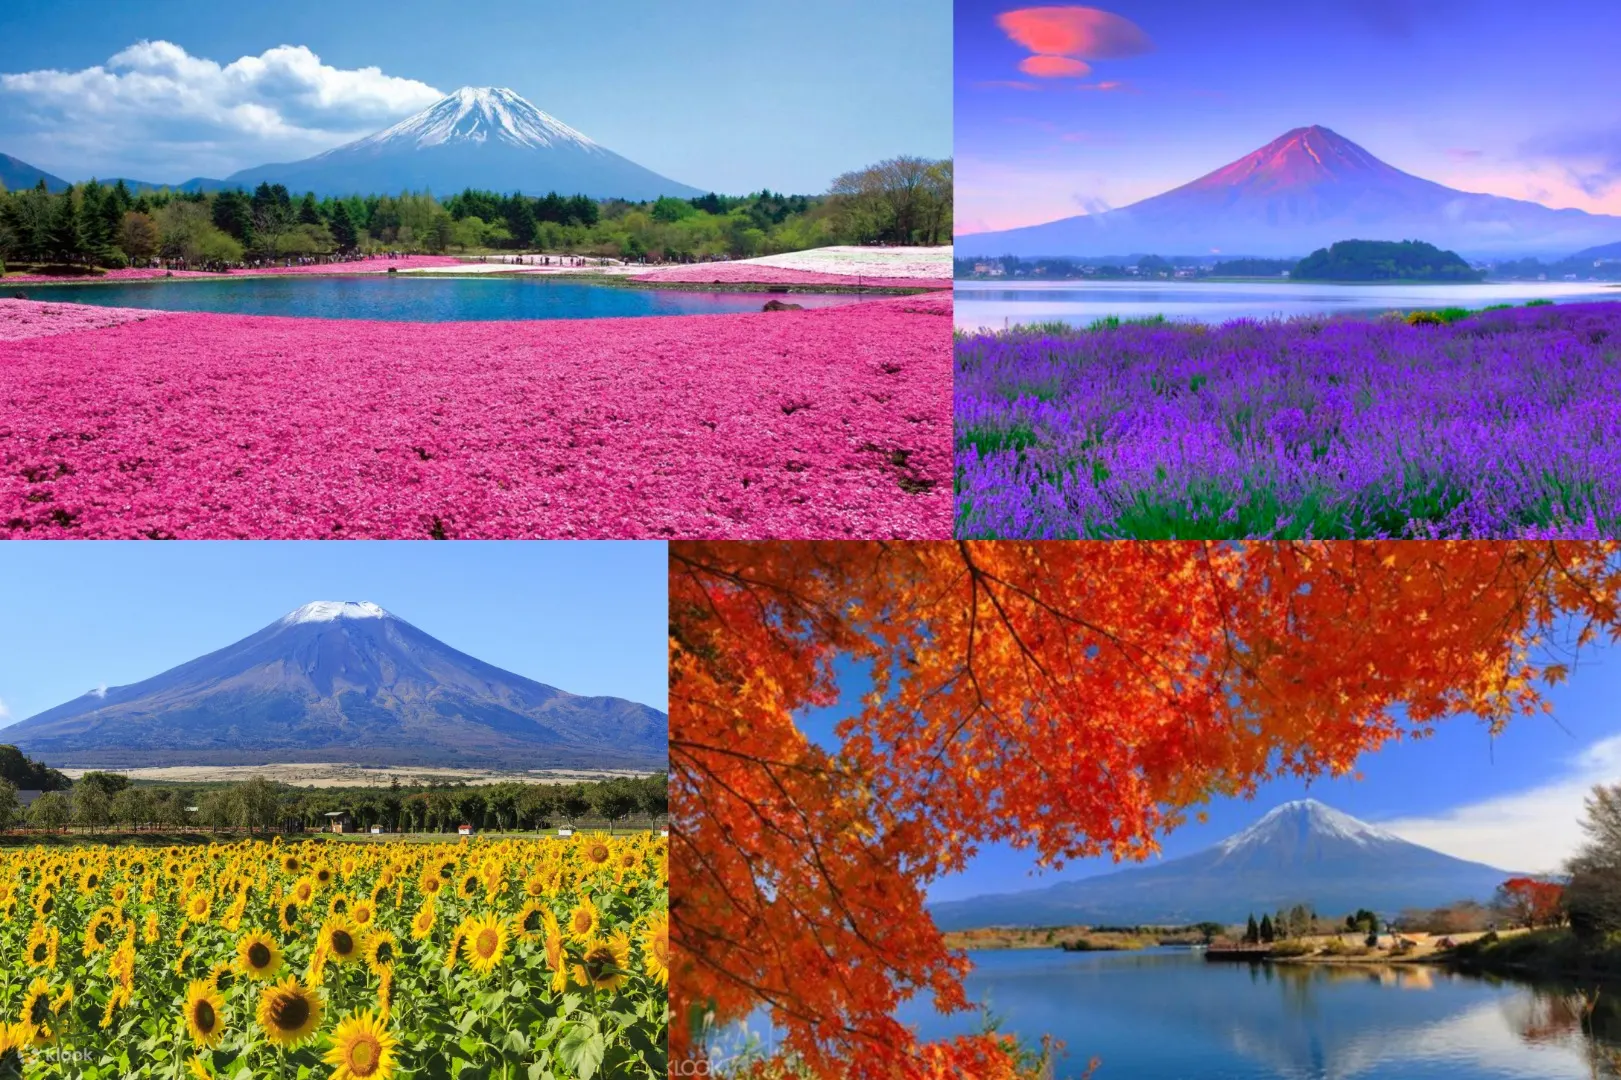 预订富士山花卉观光之旅 一日行程全面玩透富士山 Klook客路中国